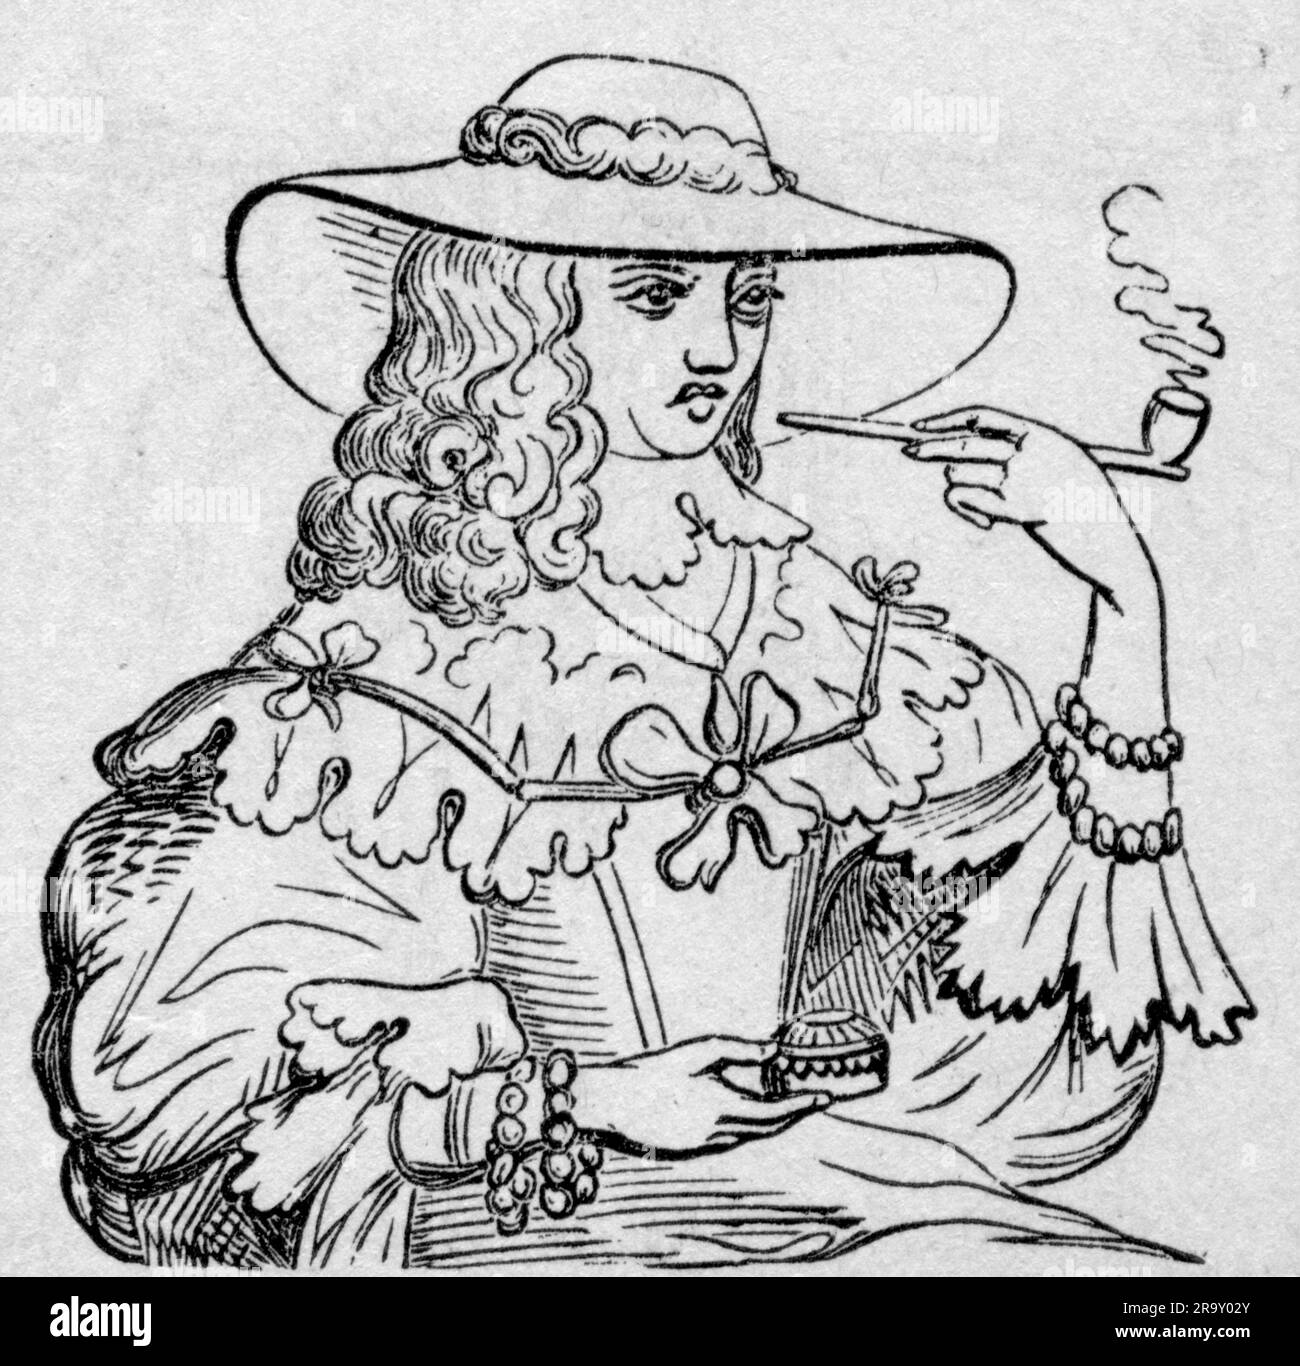 Tabak, Pfeifenraucherin, Holzgravierung, 19. Jahrhundert, nach Illustration, Mitte des 17. Jahrhunderts muss DAS URHEBERRECHT DES KÜNSTLERS NOCH NICHT GEKLÄRT werden Stockfoto